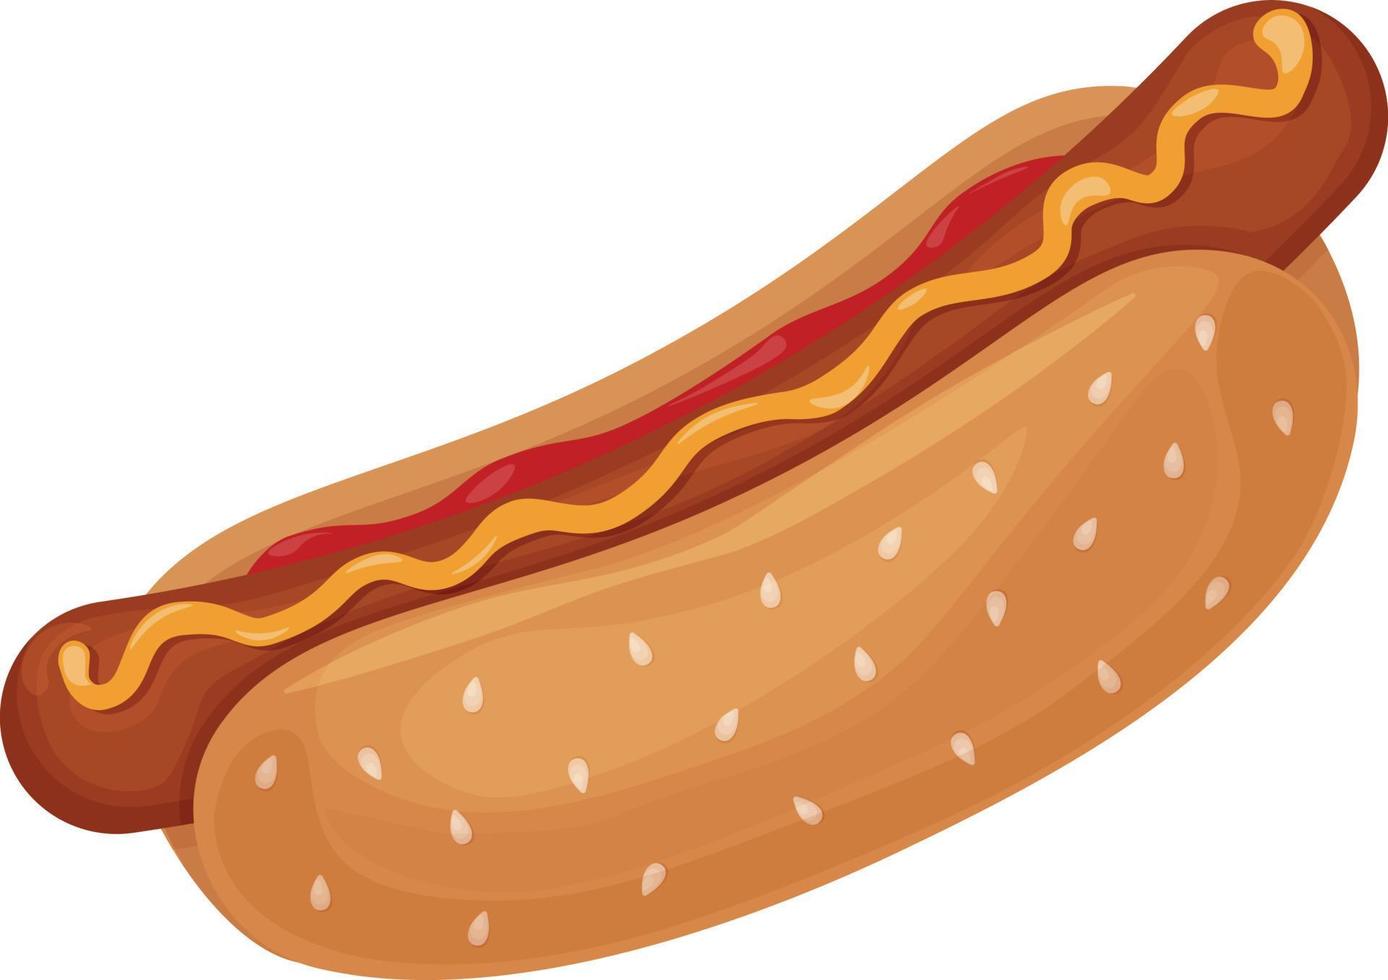 caliente perro. imagen de un caliente perro con salchicha con salsa de tomate y rociado con mostaza. rápido alimento. vector ilustración aislado en un blanco antecedentes